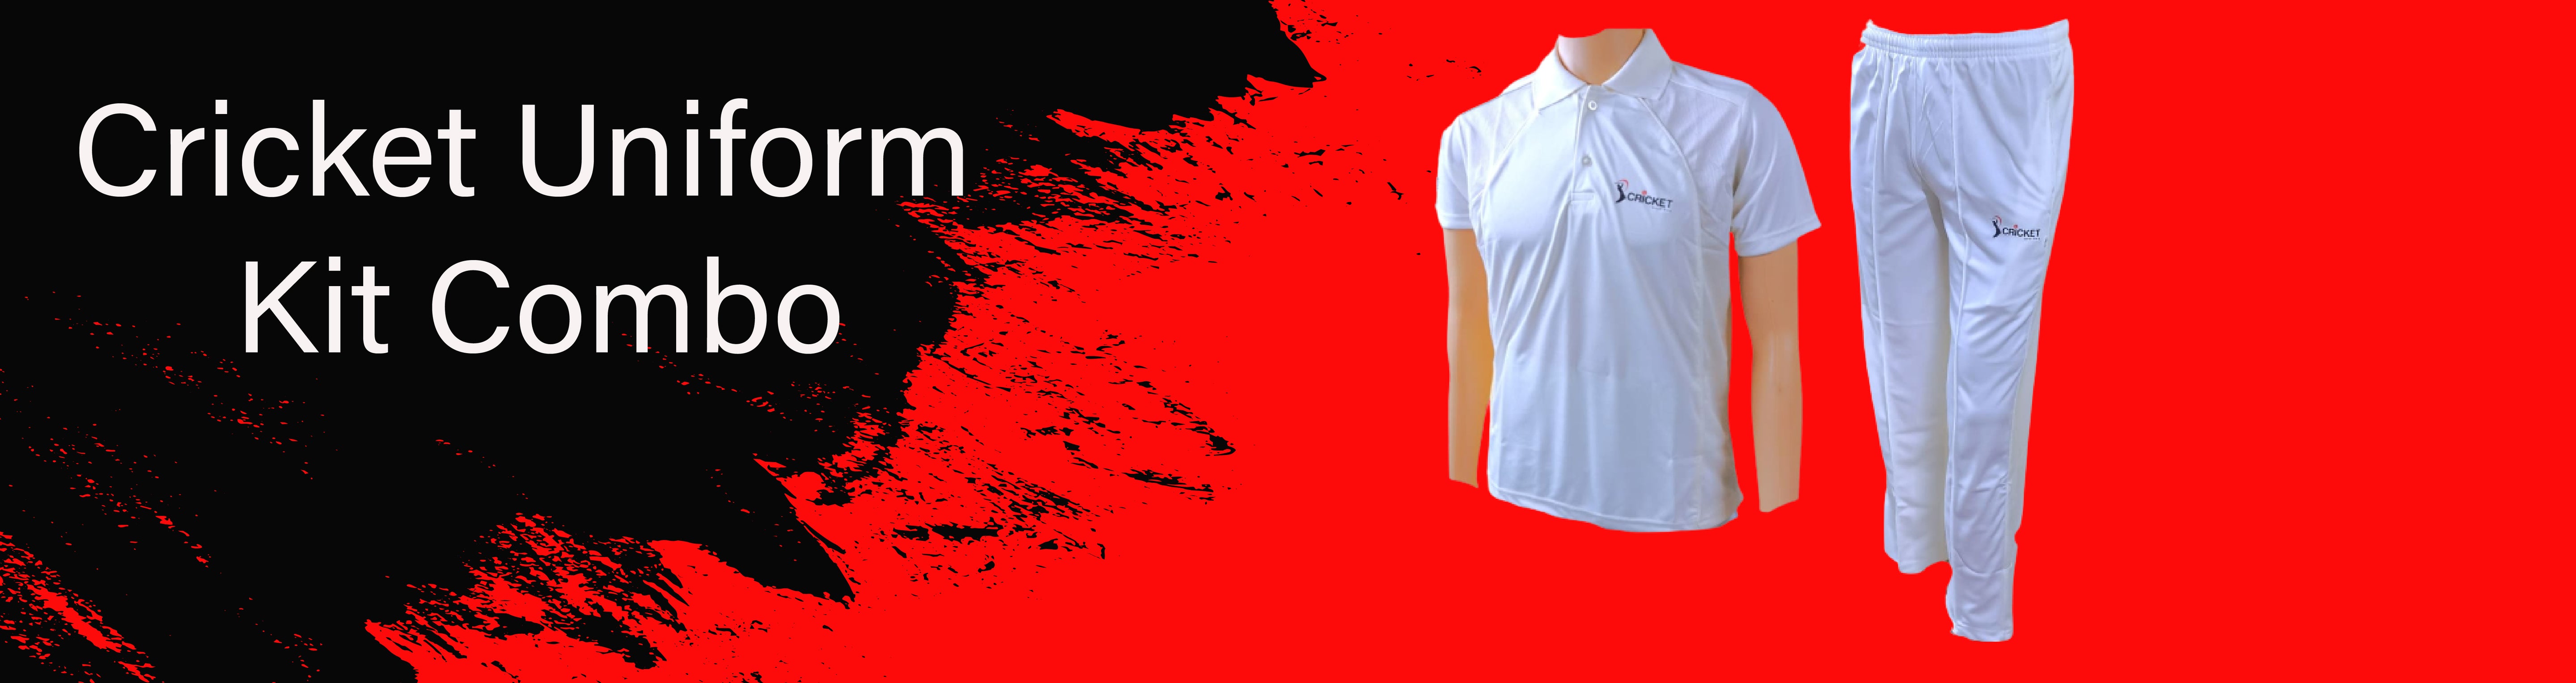 CLOTHING -Cricket Uniform Kit Combo-